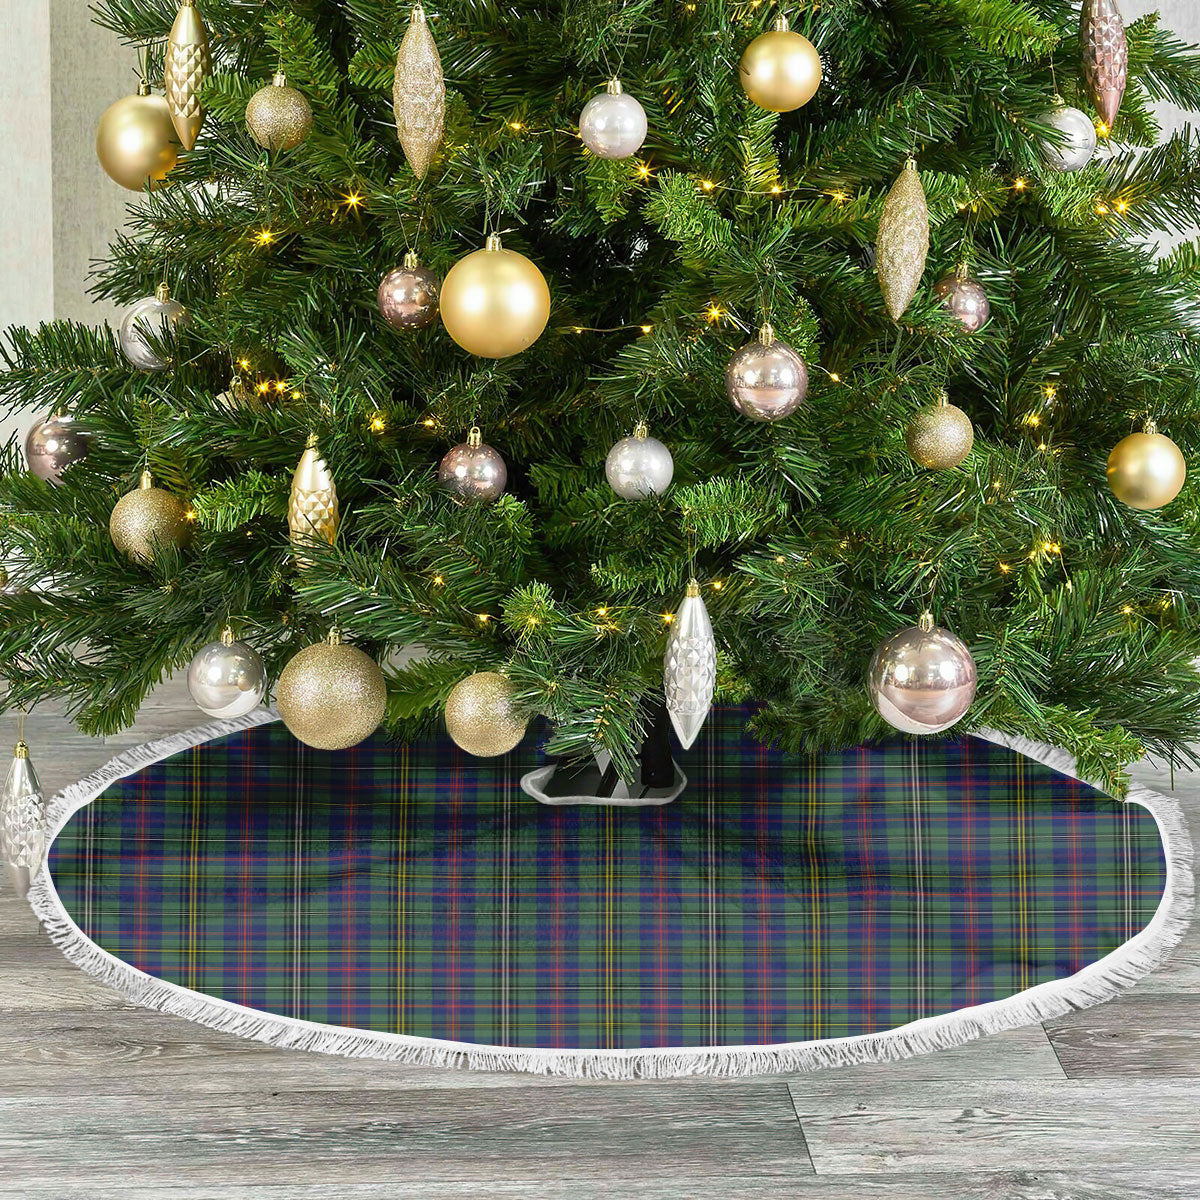 Wood Tartan Christmas Tree Skirt